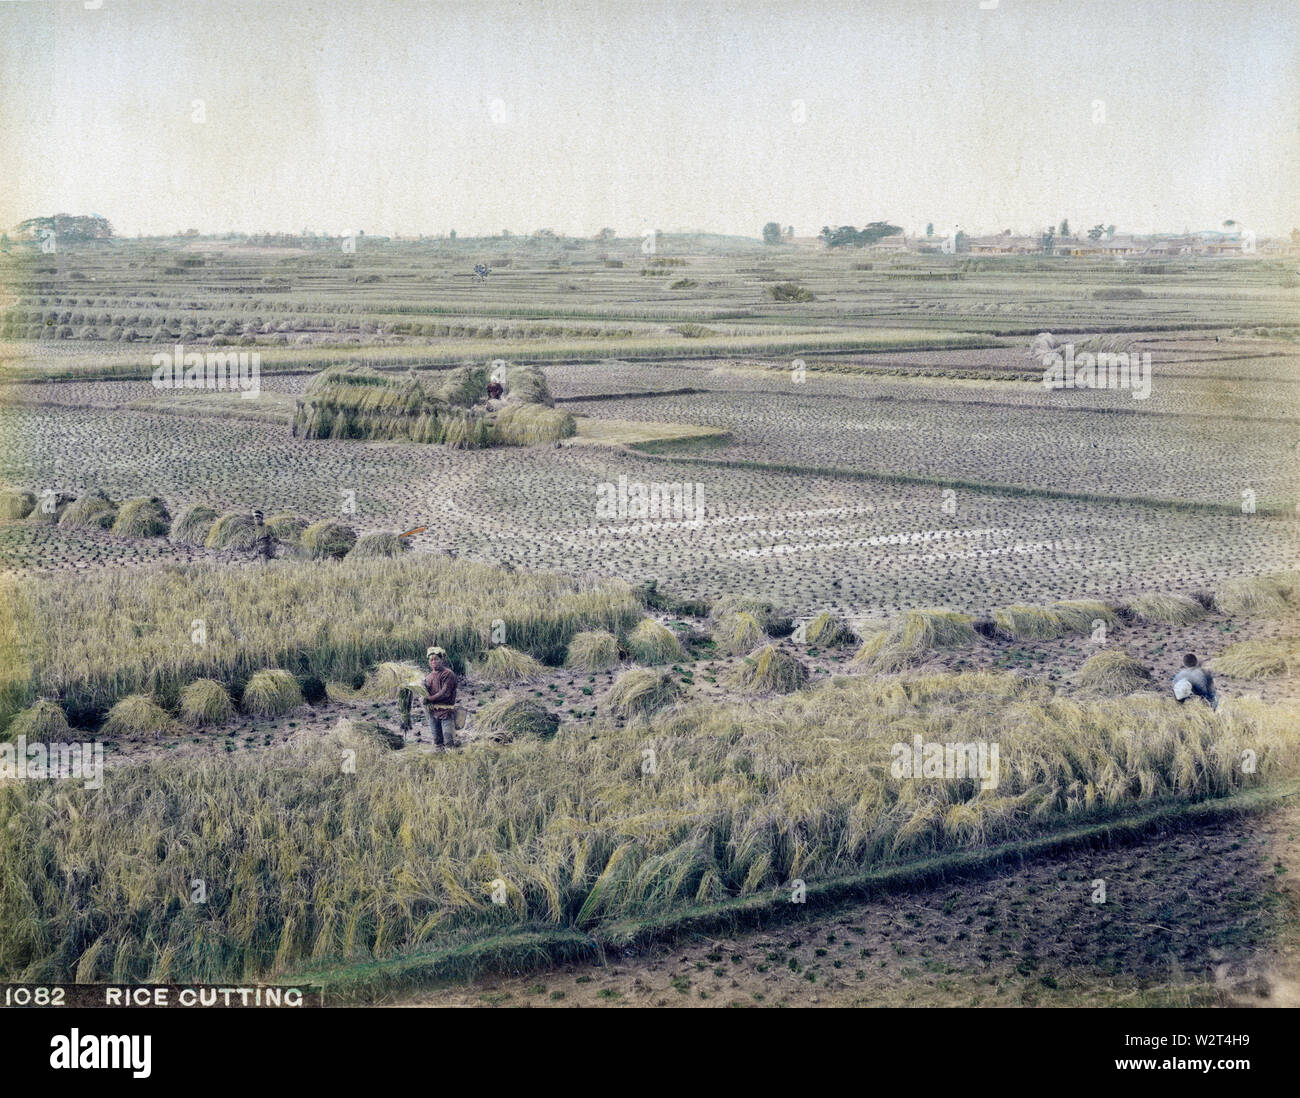 [1890s Japan - Japanische Bauern ernten Reis] - Landwirte der Ernte von Reis. 19 Vintage albumen Foto. Stockfoto